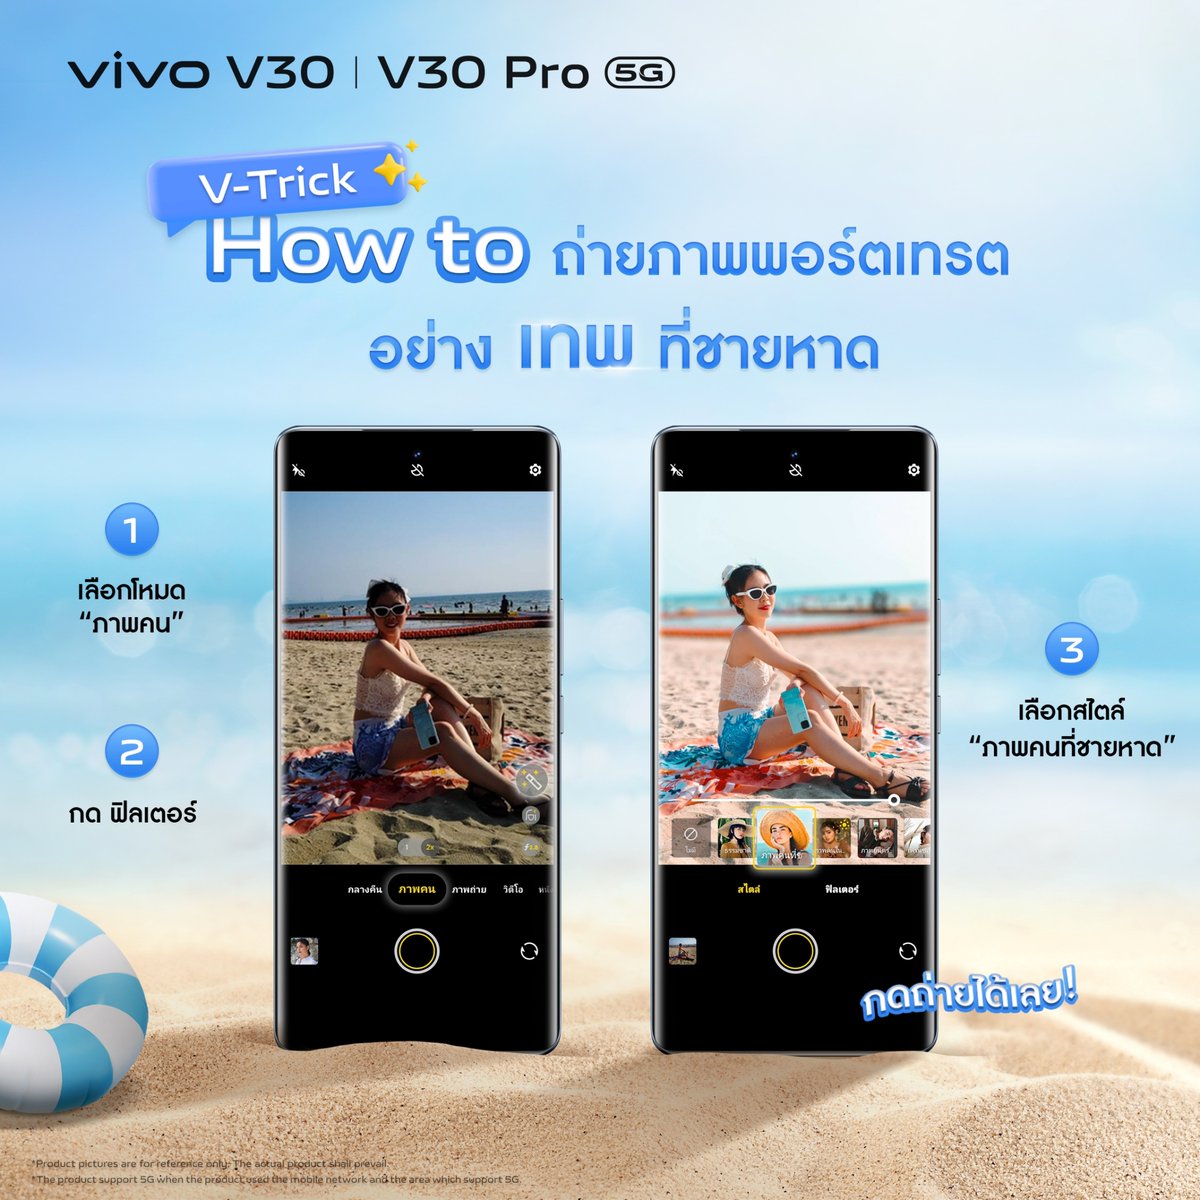 สายเที่ยวทะเลห้ามพลาด! แนะนำฟิลเตอร์ถ่ายภาพพอร์ตเทรตที่ชายหาด ใน vivo V30 5G และ V30 Pro 5G 🏖️ ปรับแสงพื้นหลังโดยแยกกับตัวแบบ ช่วยให้สกินโทนนุ่มนวลมีออร่า พร้อมสีพื้นหลังสดใสรับซัมเมอร์☀️ ดูเพิ่มเติม bit.ly/3IlkLlb #vivoV305G #vivoV30Pro5G #ถ่ายเทพเกินคน #PortraitSoPro